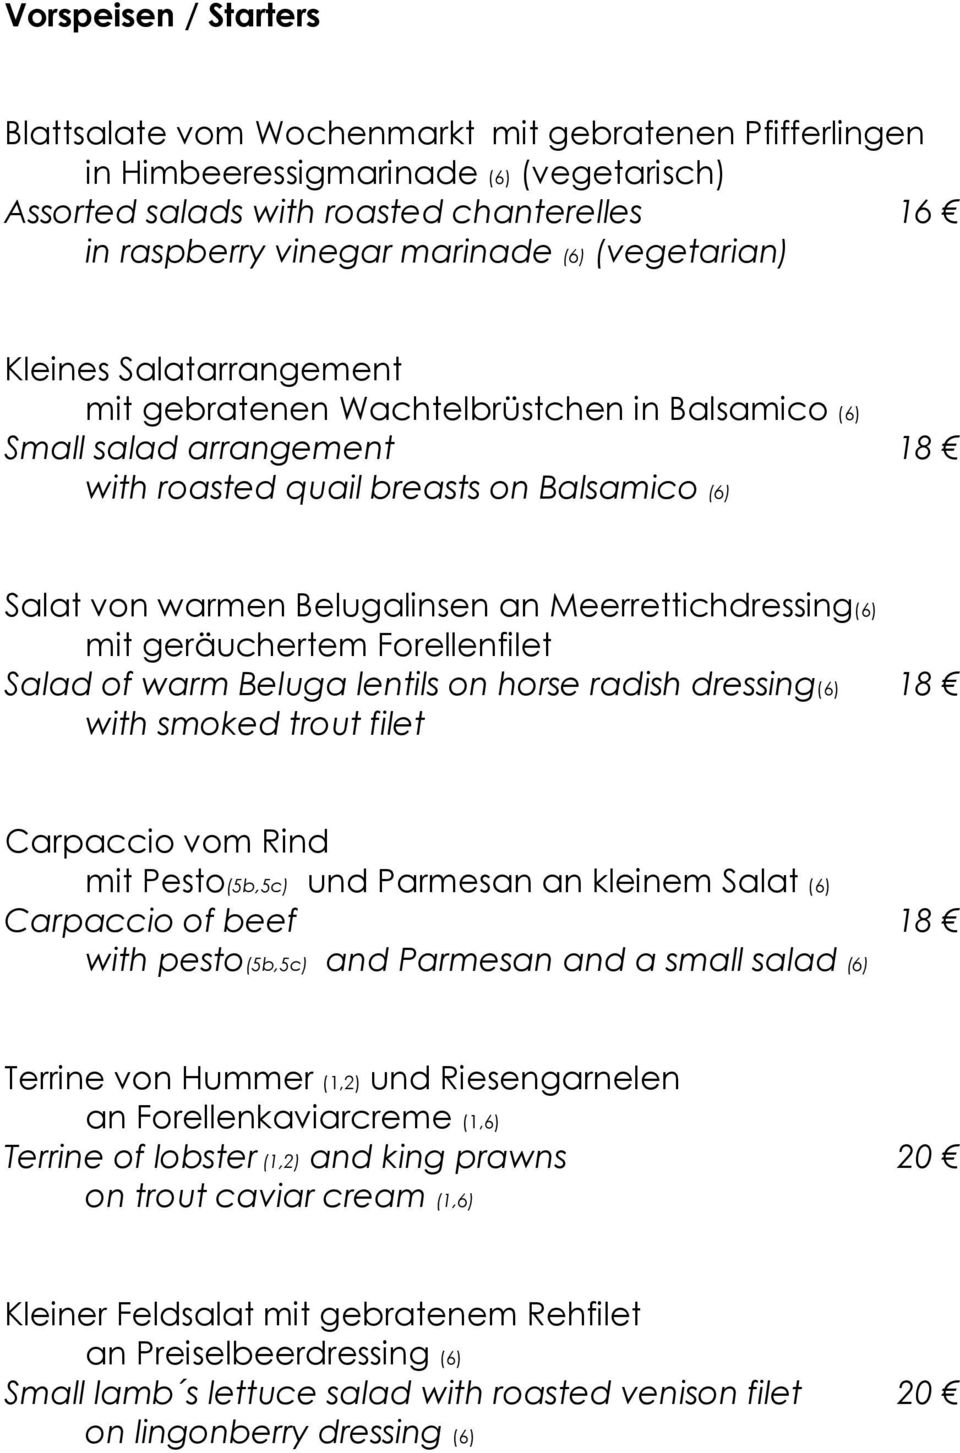 Meerrettichdressing(6) mit geräuchertem Forellenfilet Salad of warm Beluga lentils on horse radish dressing(6) 18 with smoked trout filet Carpaccio vom Rind mit Pesto(5b,5c) und Parmesan an kleinem